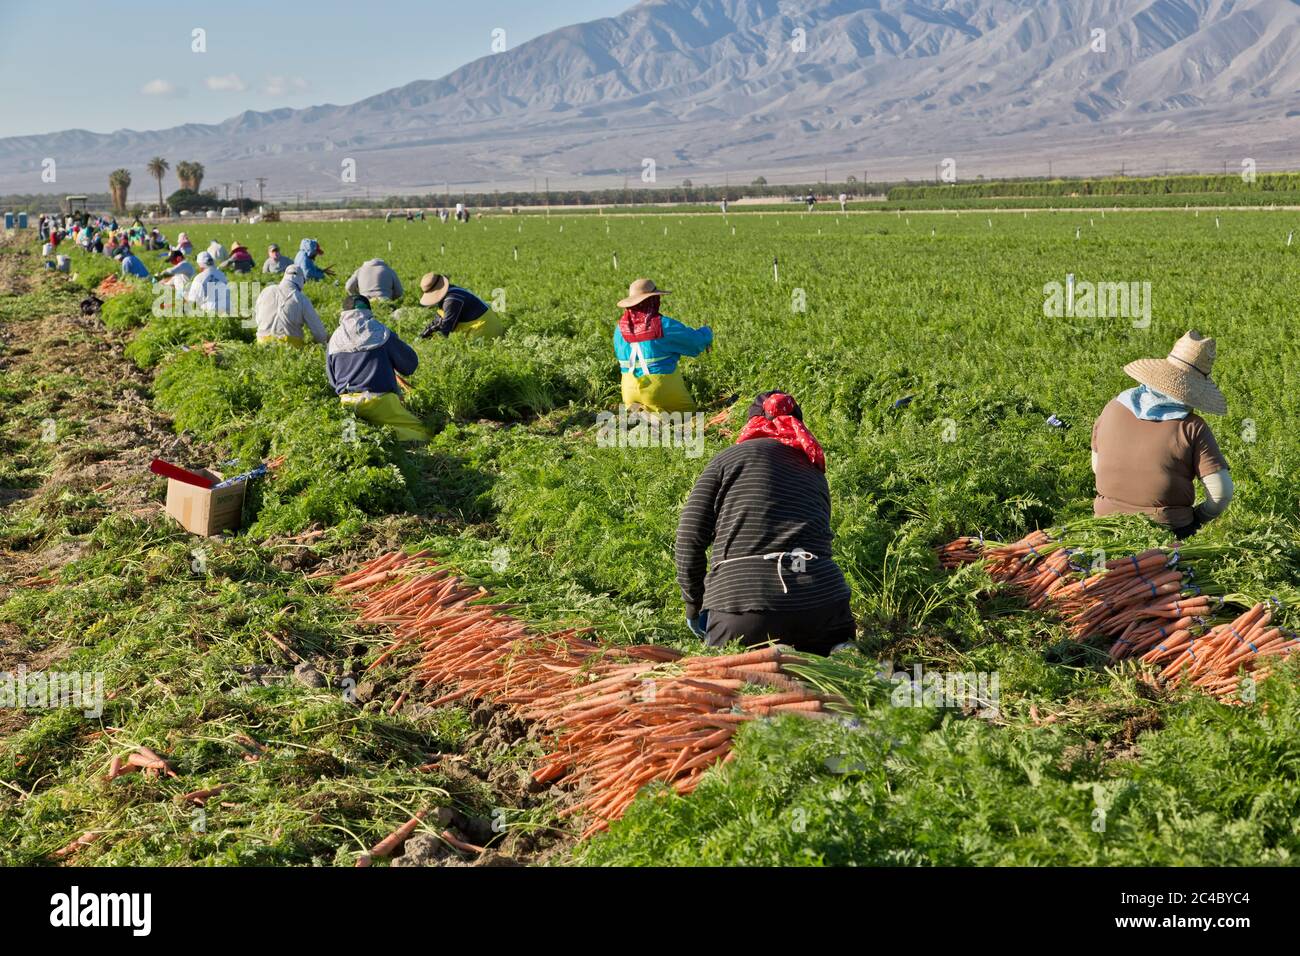 Lavoratori agricoli ispanici che raccolgono il campo di carote biologiche "Deauus carota", piantagione di palma da dattero in lontananza, Valle di Coachella, Foto Stock